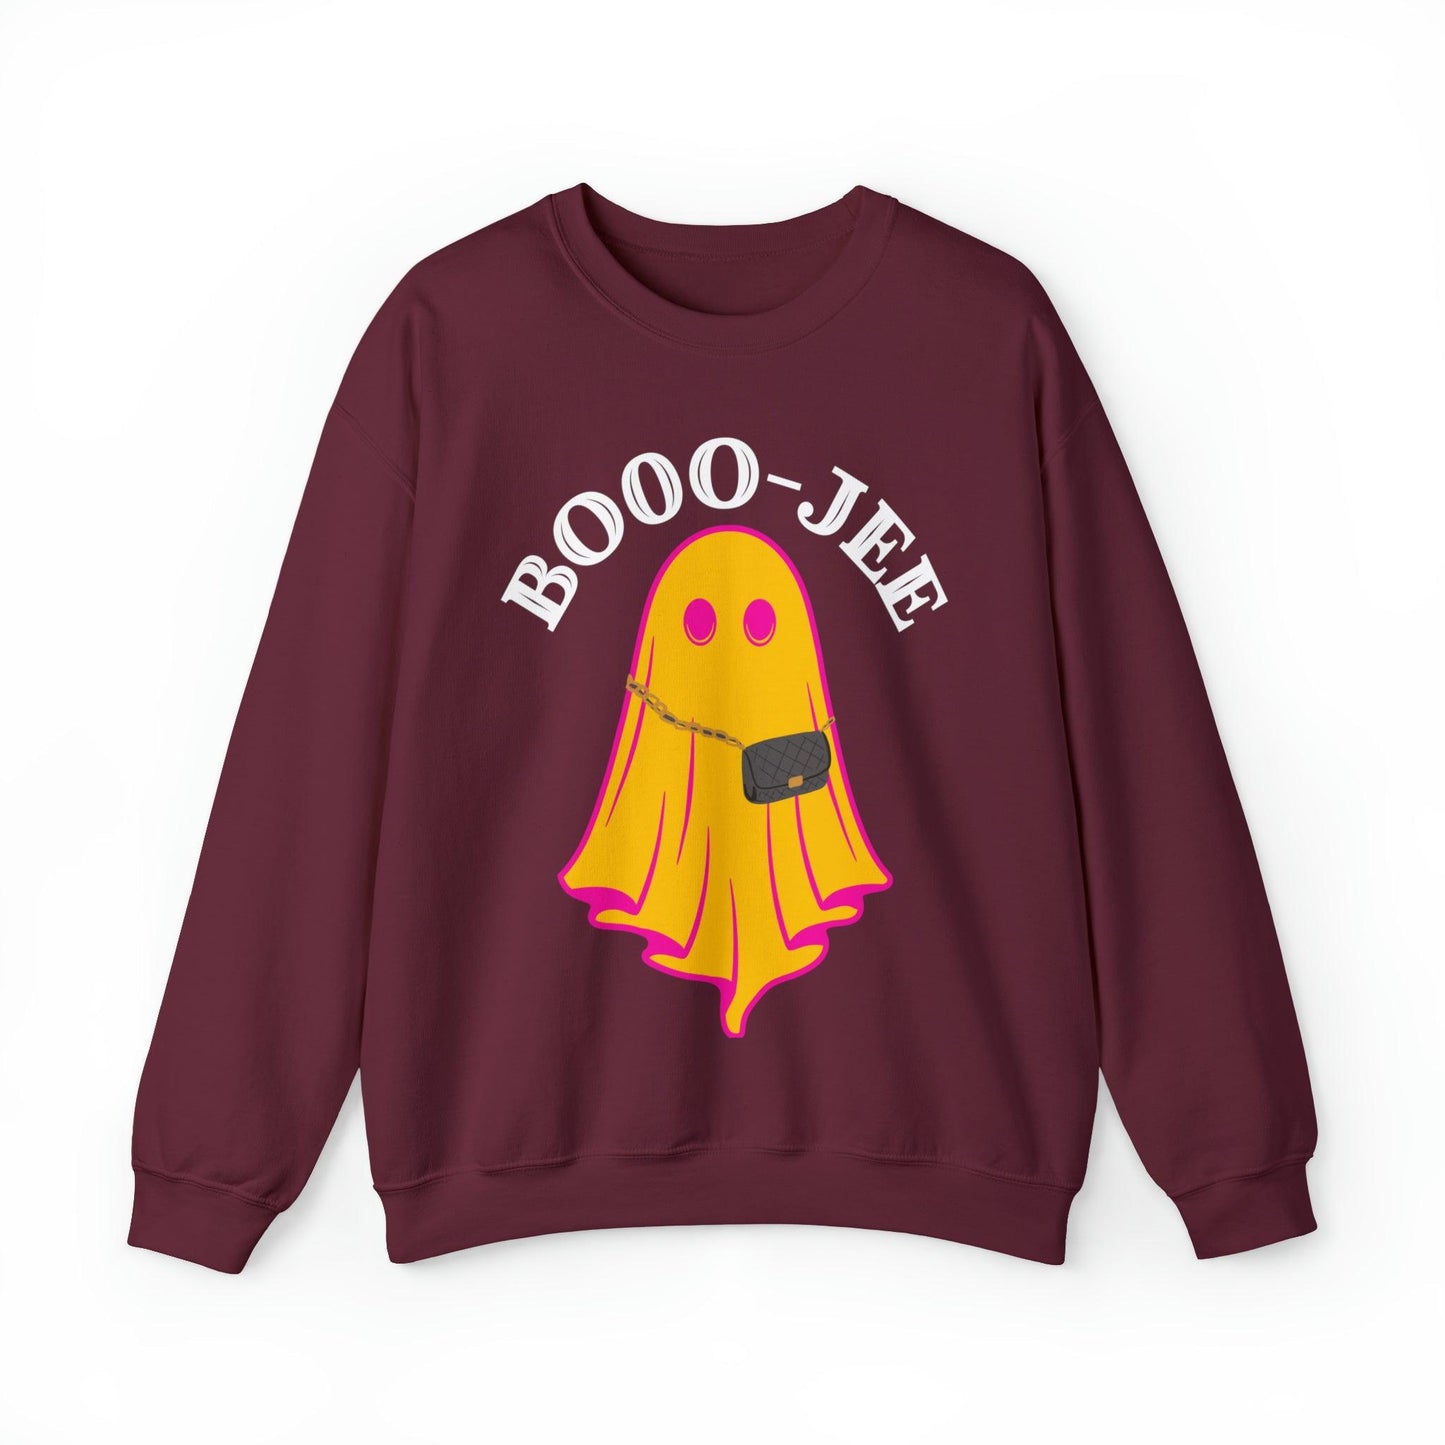 booo-jee sweatshirt